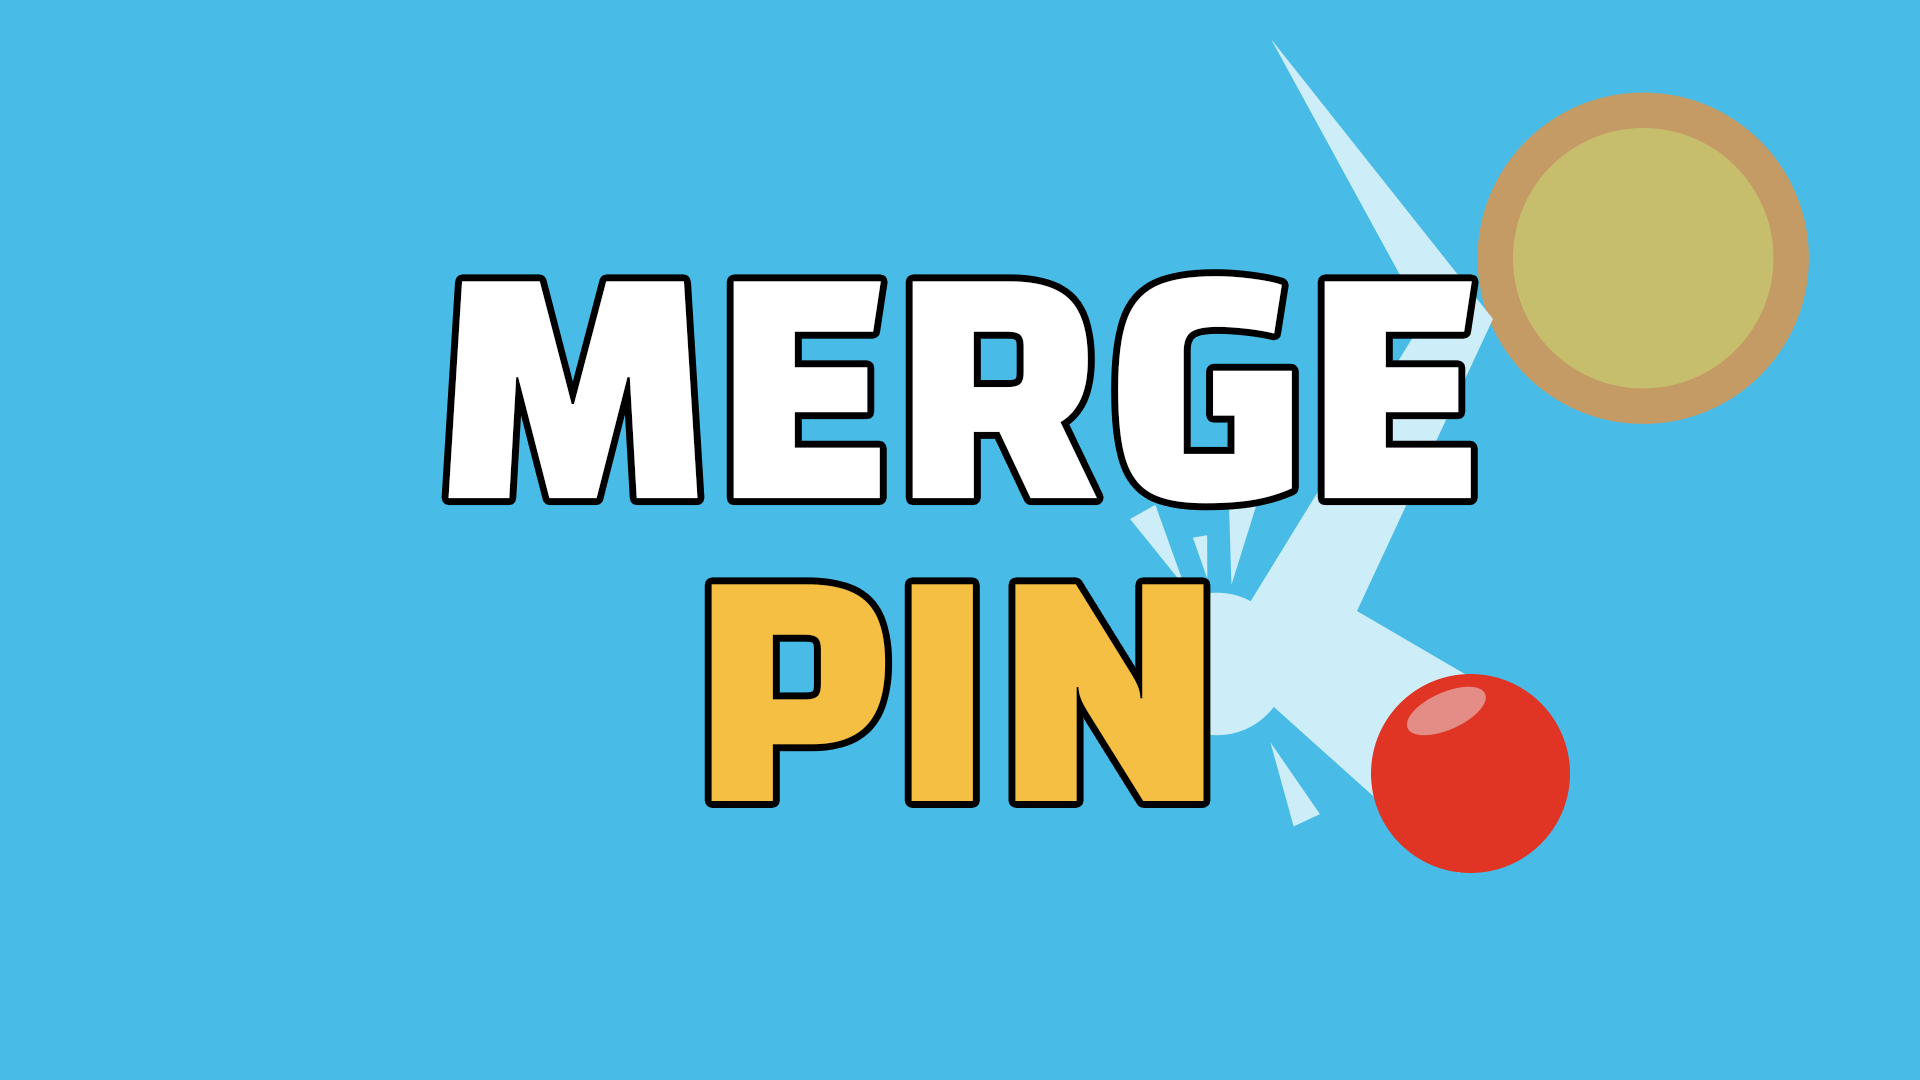 Merge & Pin: Idle Pinball Game Image